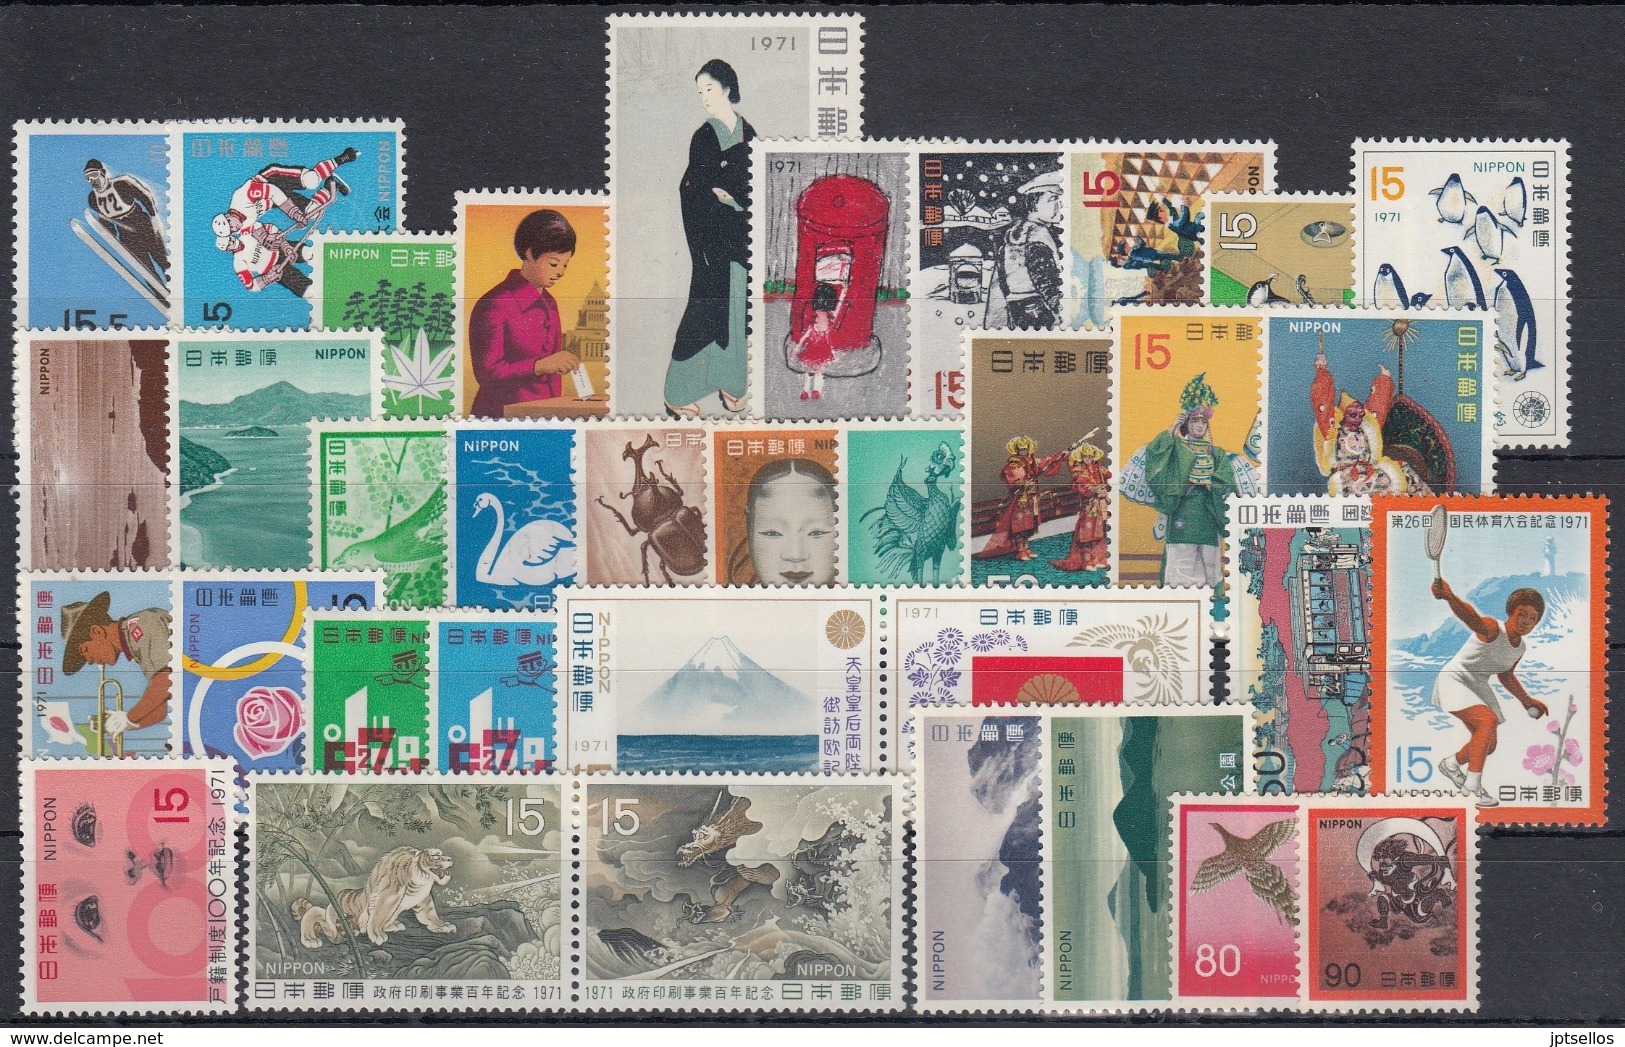 JAPON 1971 Nº1000/32 + 1036/37 + HB-69 NUEVO PEPFECTO 35 SELLOS + 1 HB - Años Completos